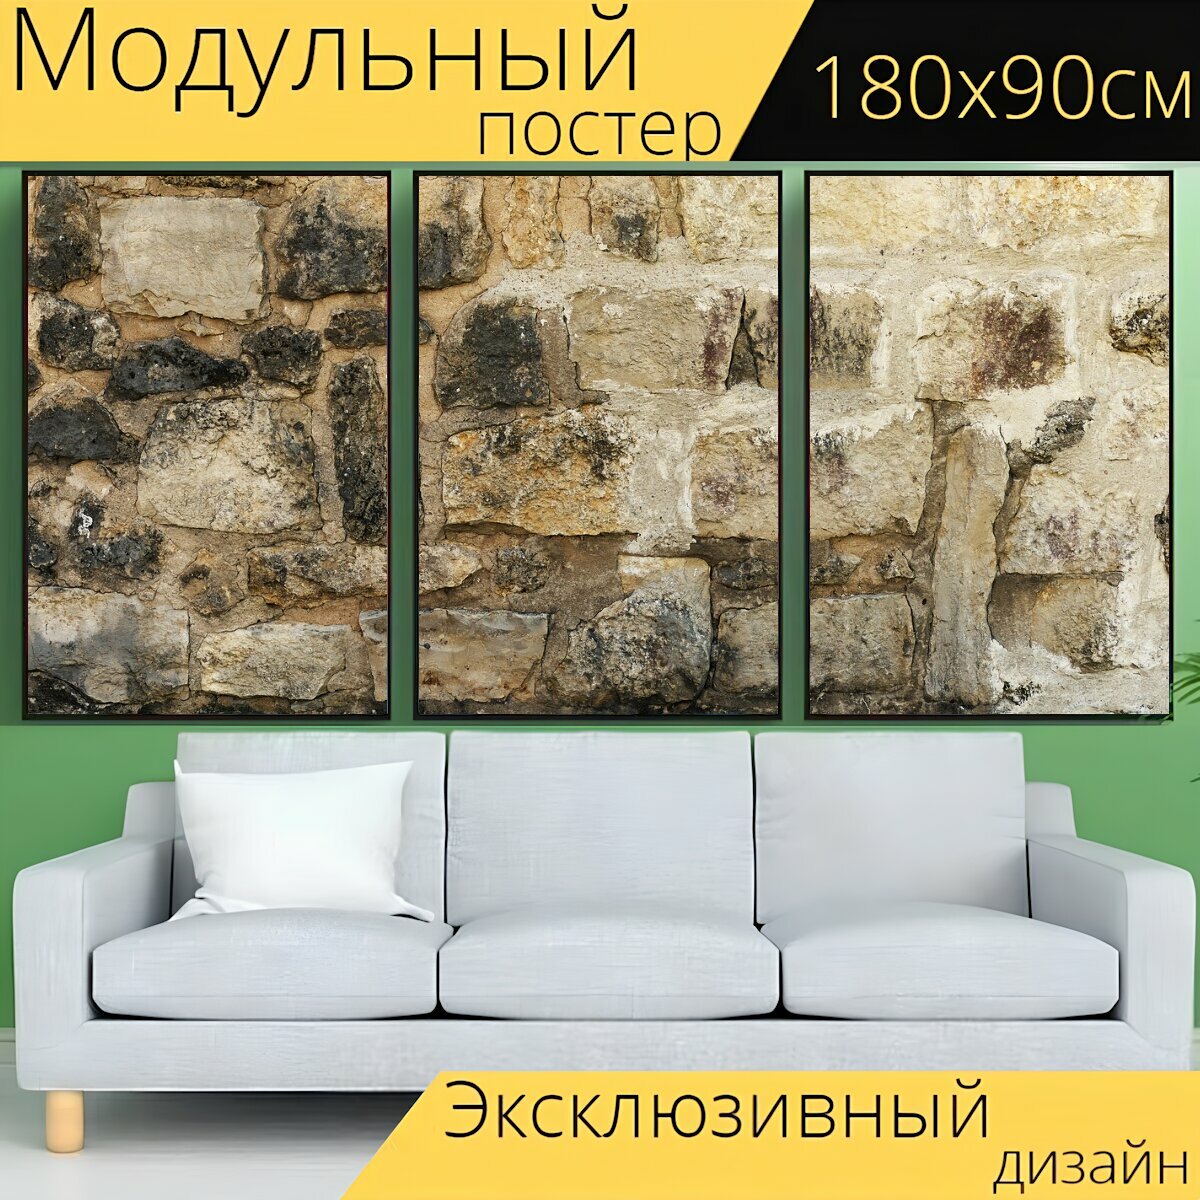 Модульный постер "Каменная стена, бутовый камень, стена завершения" 180 x 90 см. для интерьера